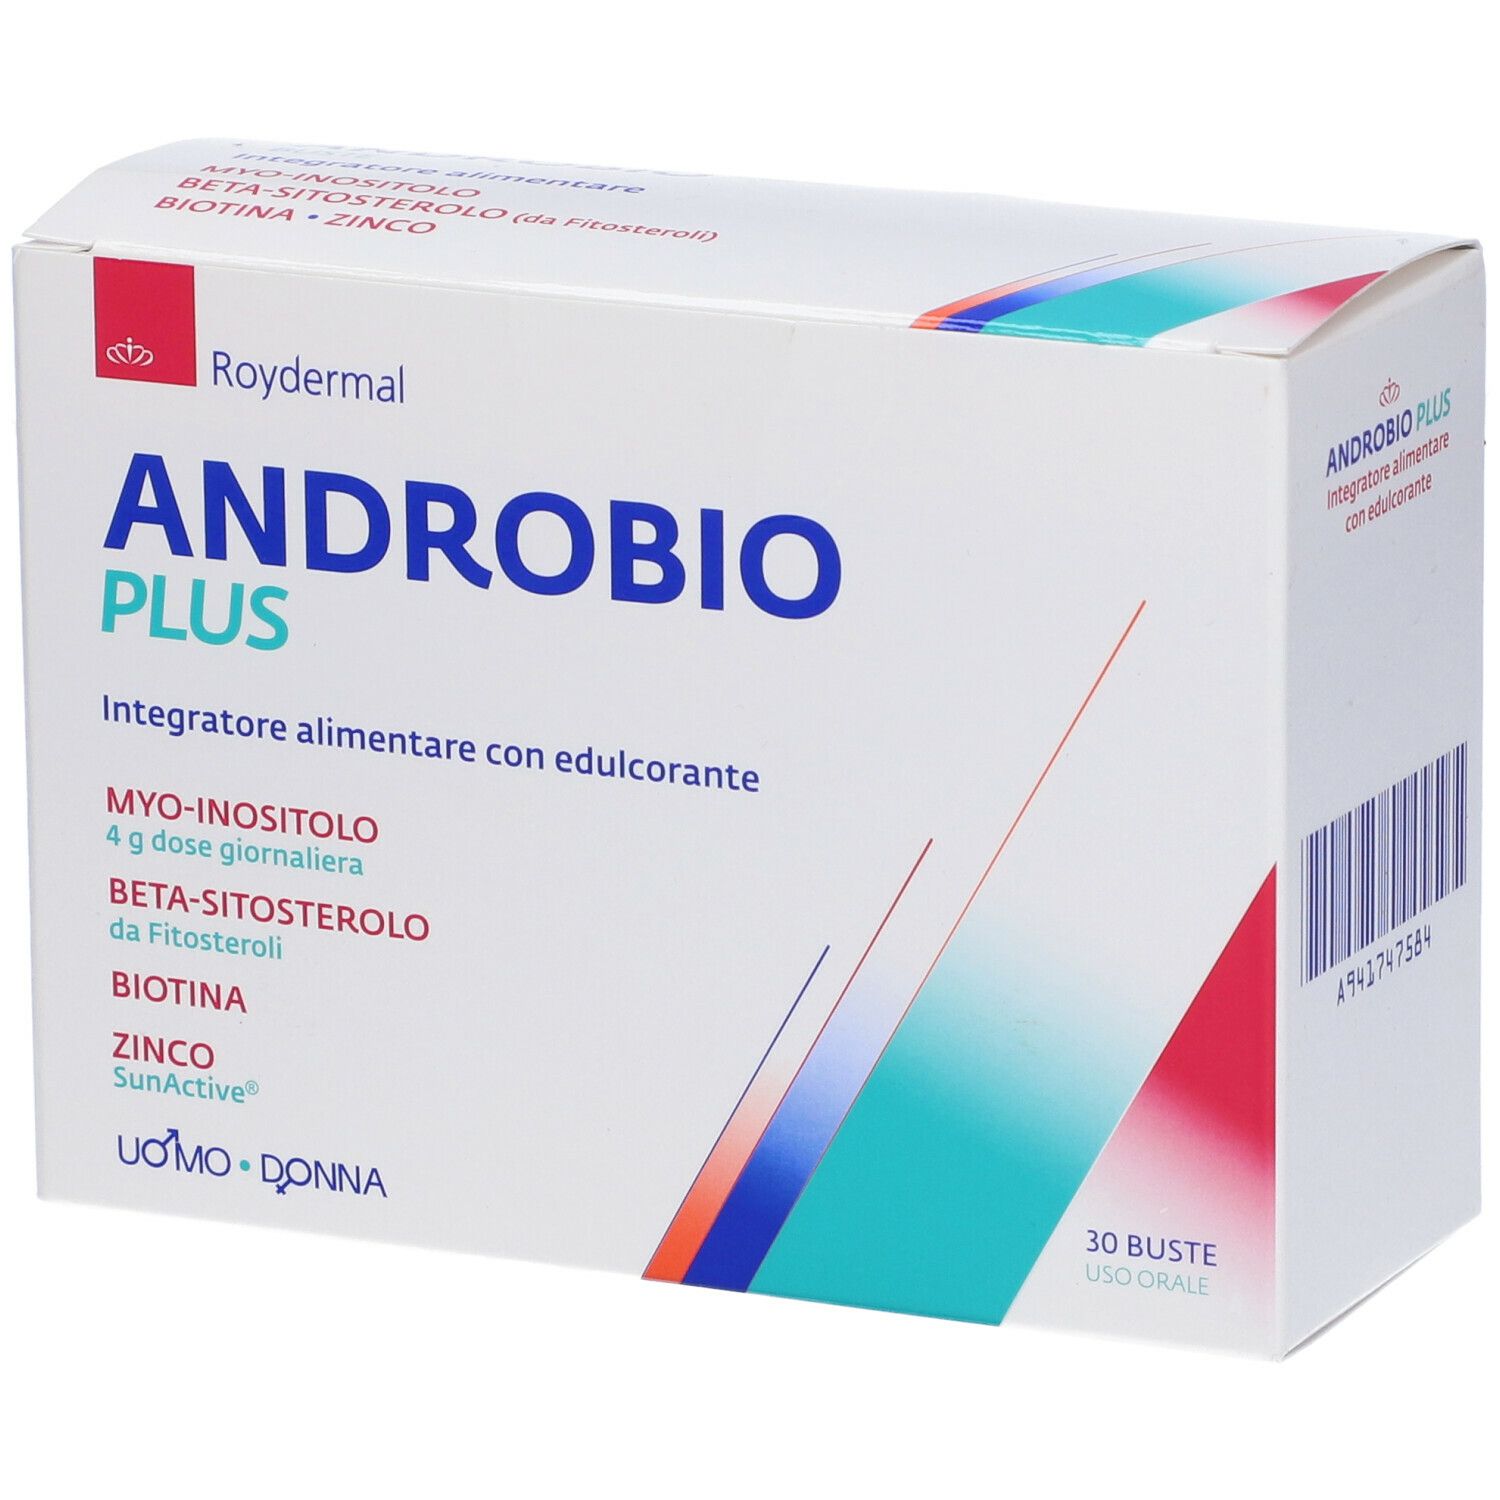 Androbio Plus